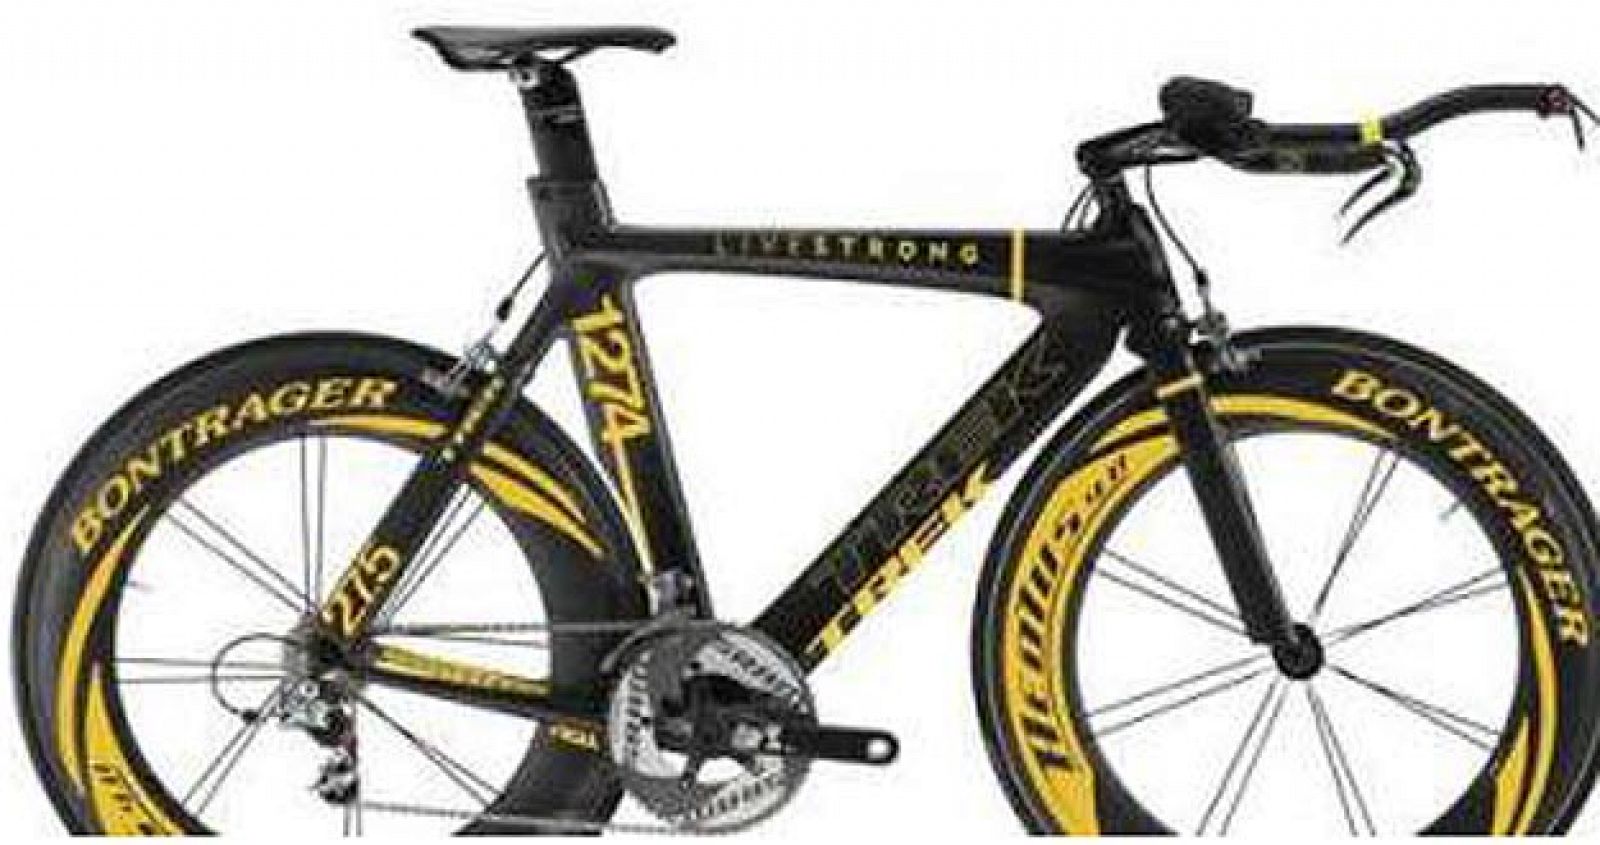 Imagen de la bicicleta robada a Armstrong, que fue colgada por el ciclista en su página personal de Twitter.